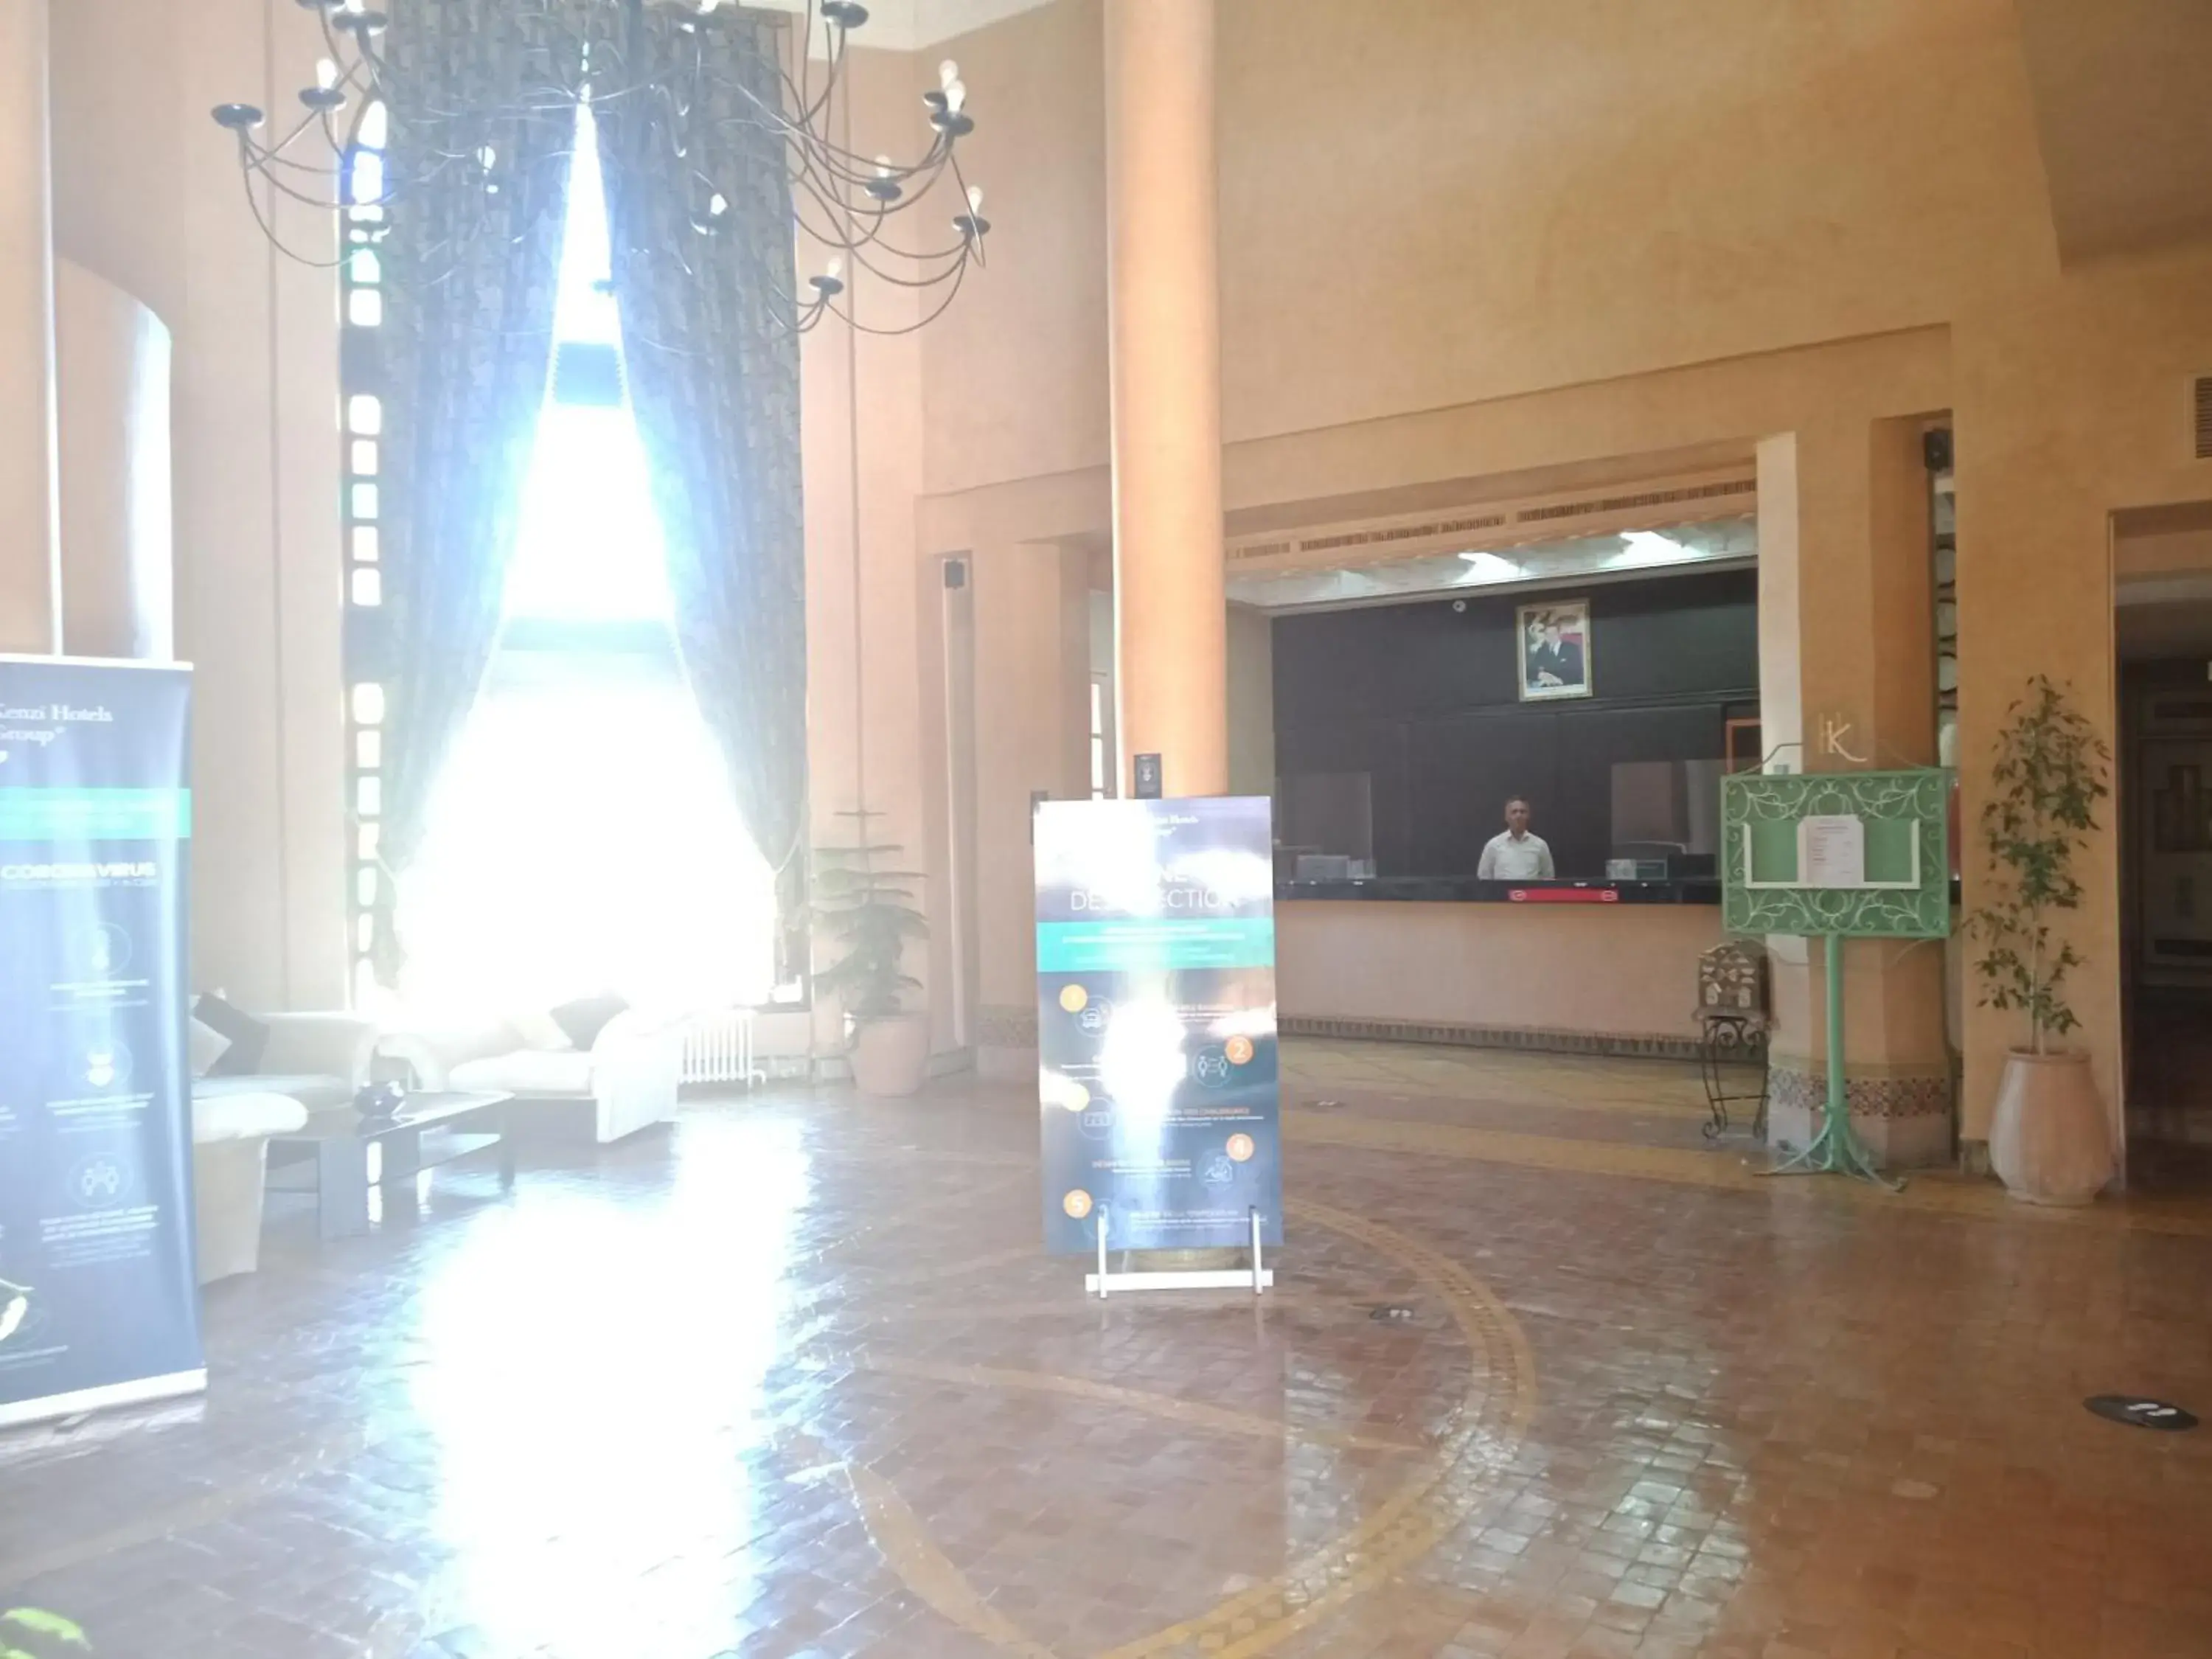 Lobby or reception in Kenzi Azghor Hotel